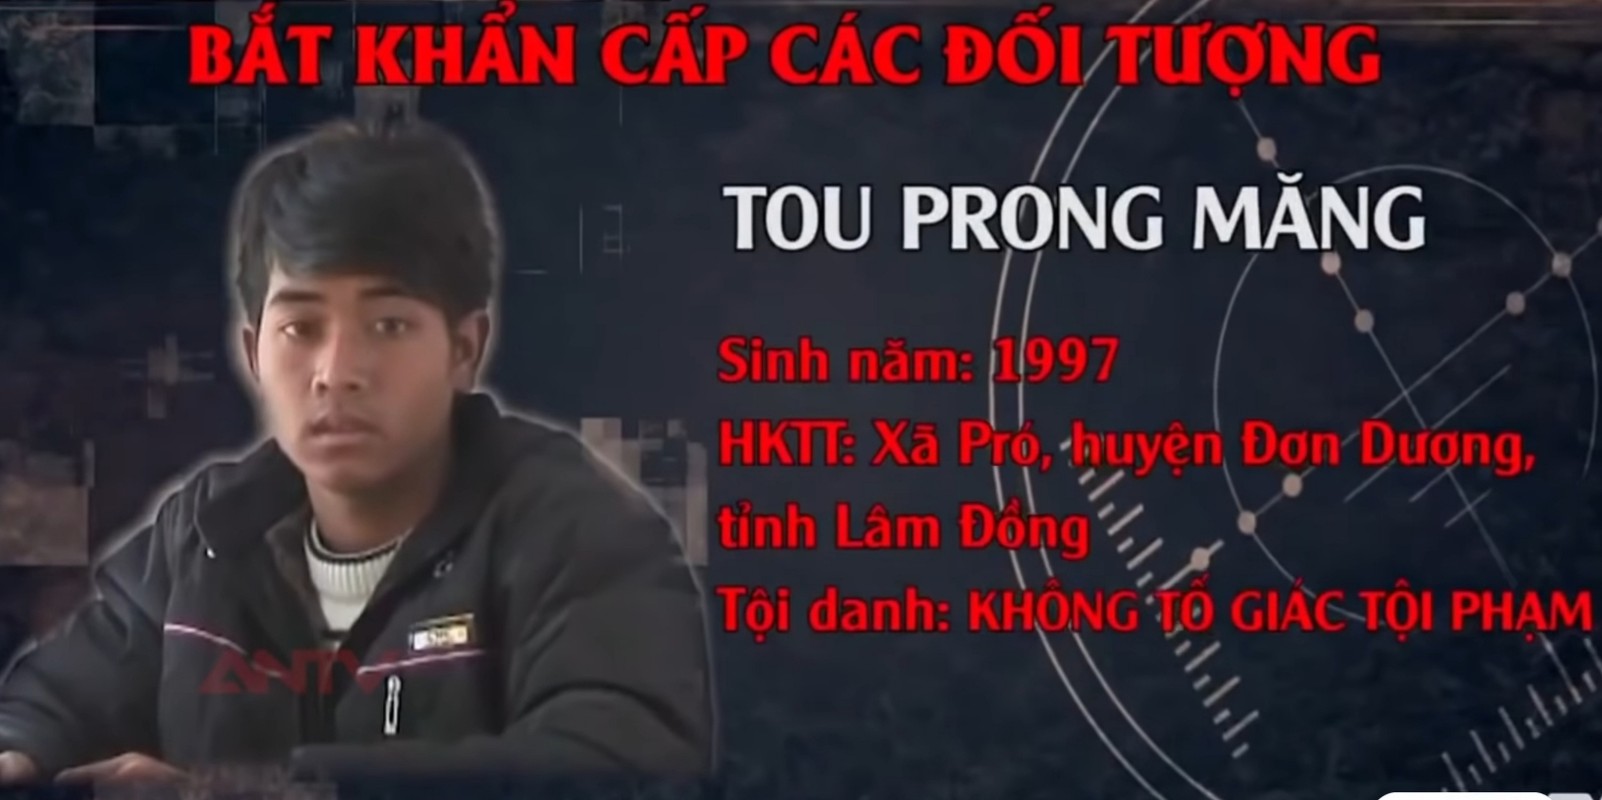 Hanh trinh pha an: Tu thi ben dong suoi to cao ke sat nhan mau lanh-Hinh-22